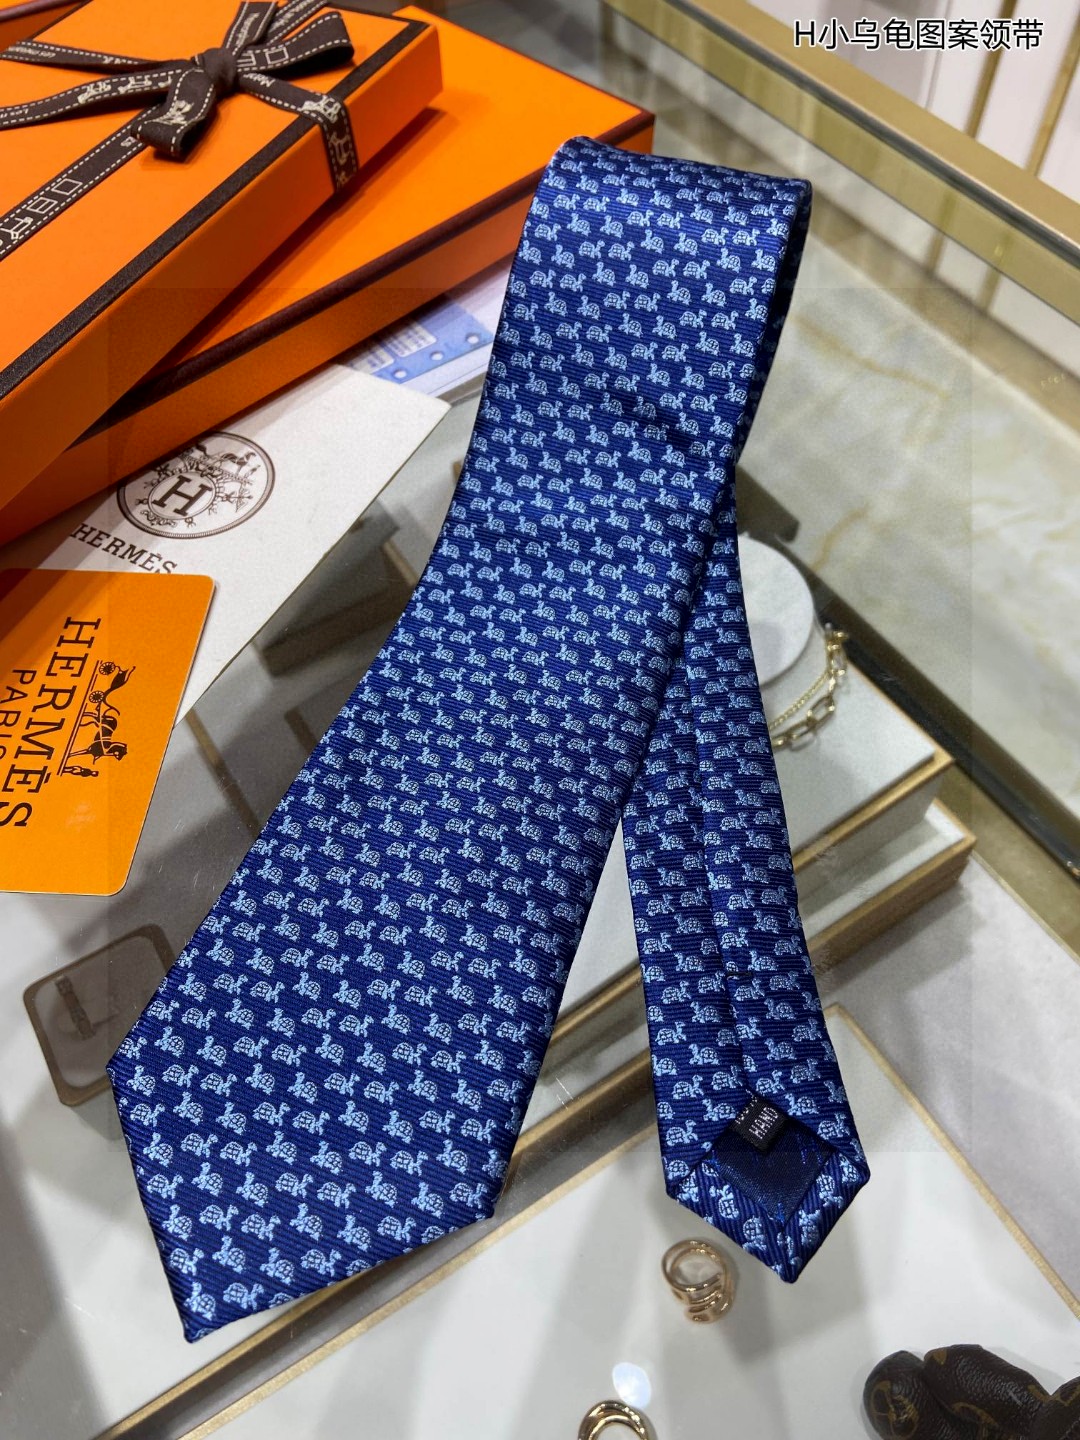 男士新款领带系列H小乌龟图案领带稀有H家每年都有一千条不同印花的领带面世从最初的多以几何图案表现骑术活动